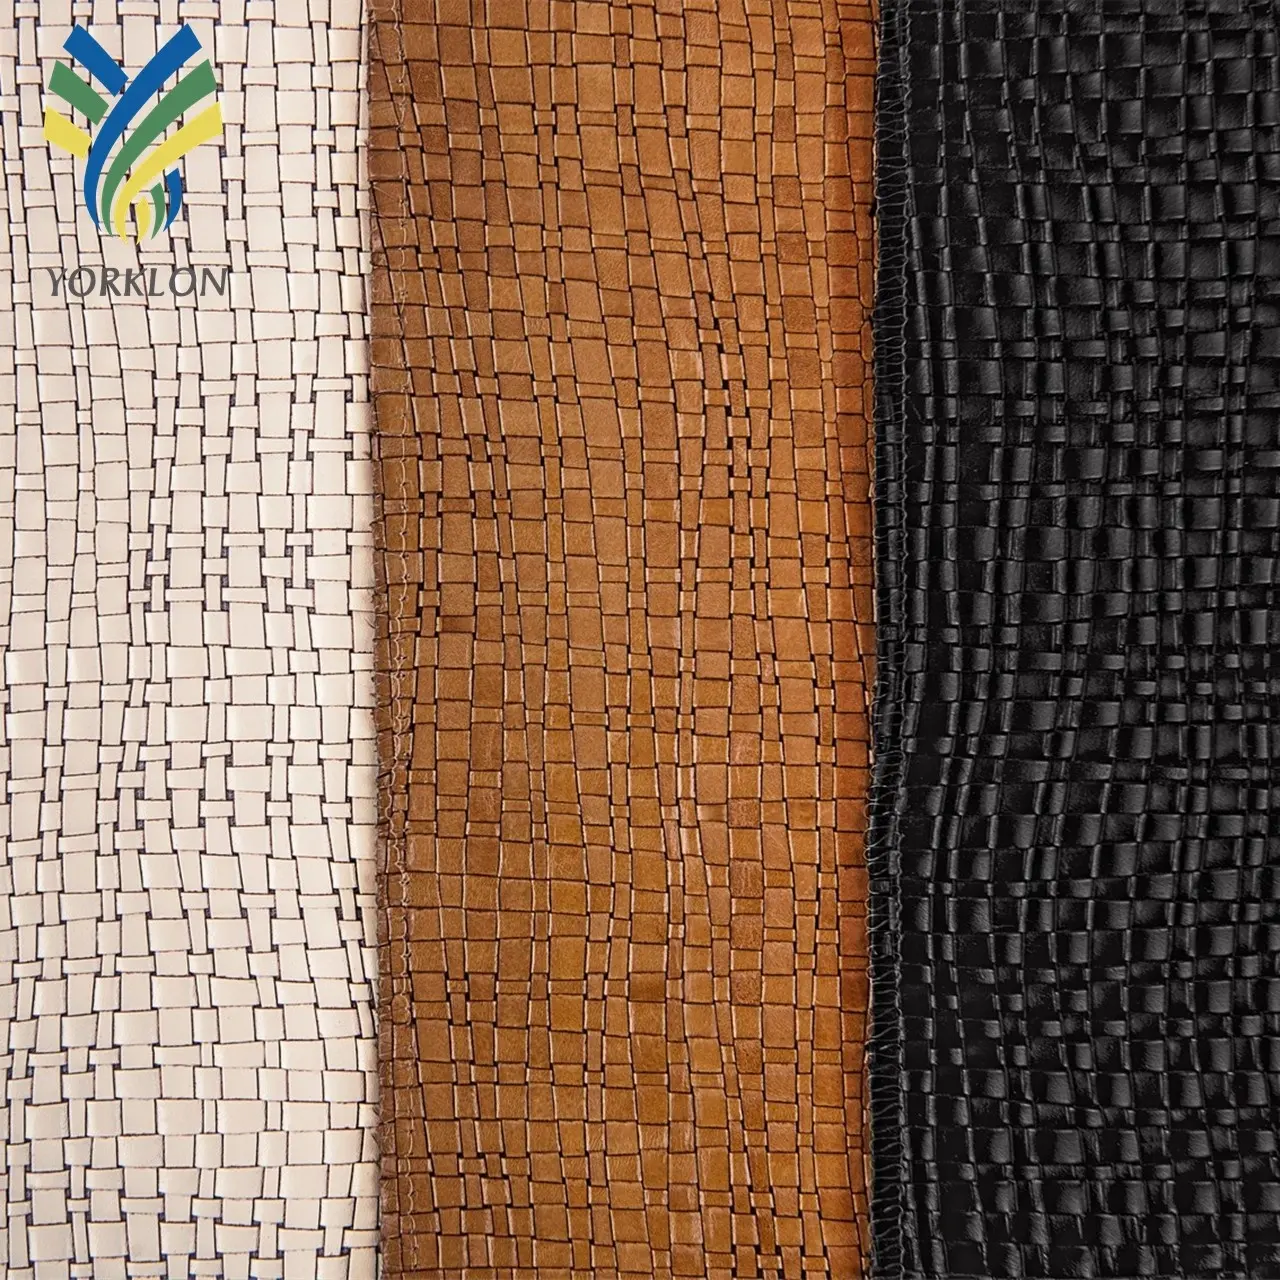 Тканый кожаный машущий узор YKBY7 из натуральной кожи для роскошного интерьера дома, обивки стен и гостиницы